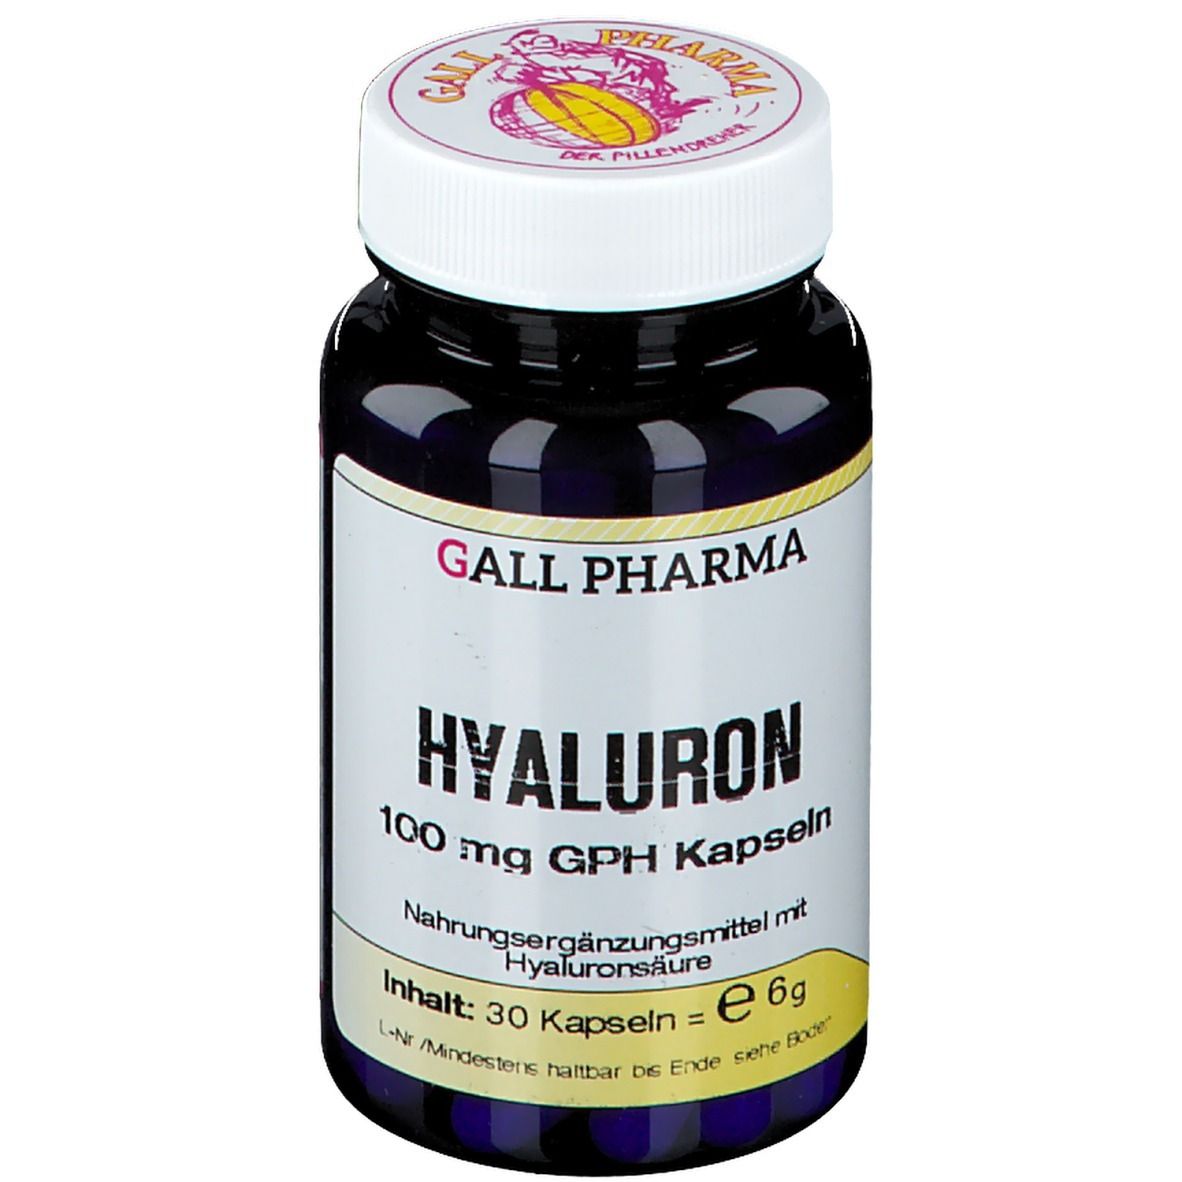 Gall Pharma Hyaluron 100 mg GPH capsules